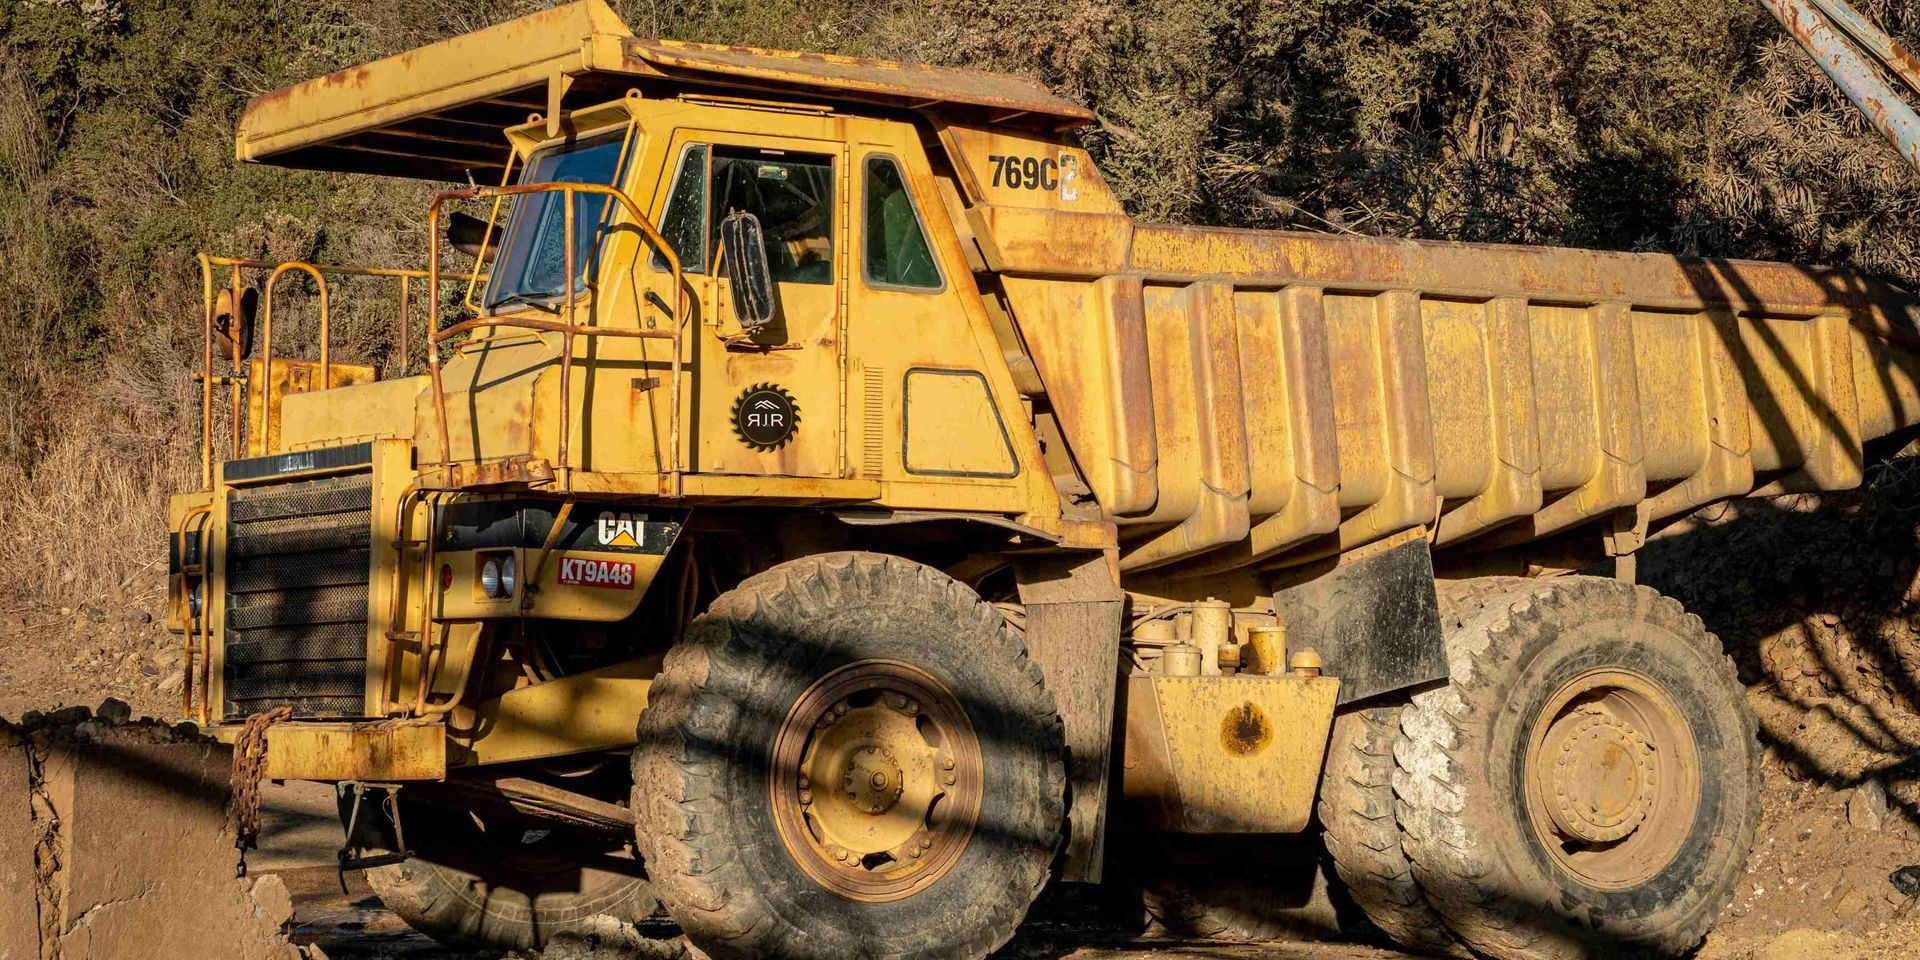 a yellow dump truck